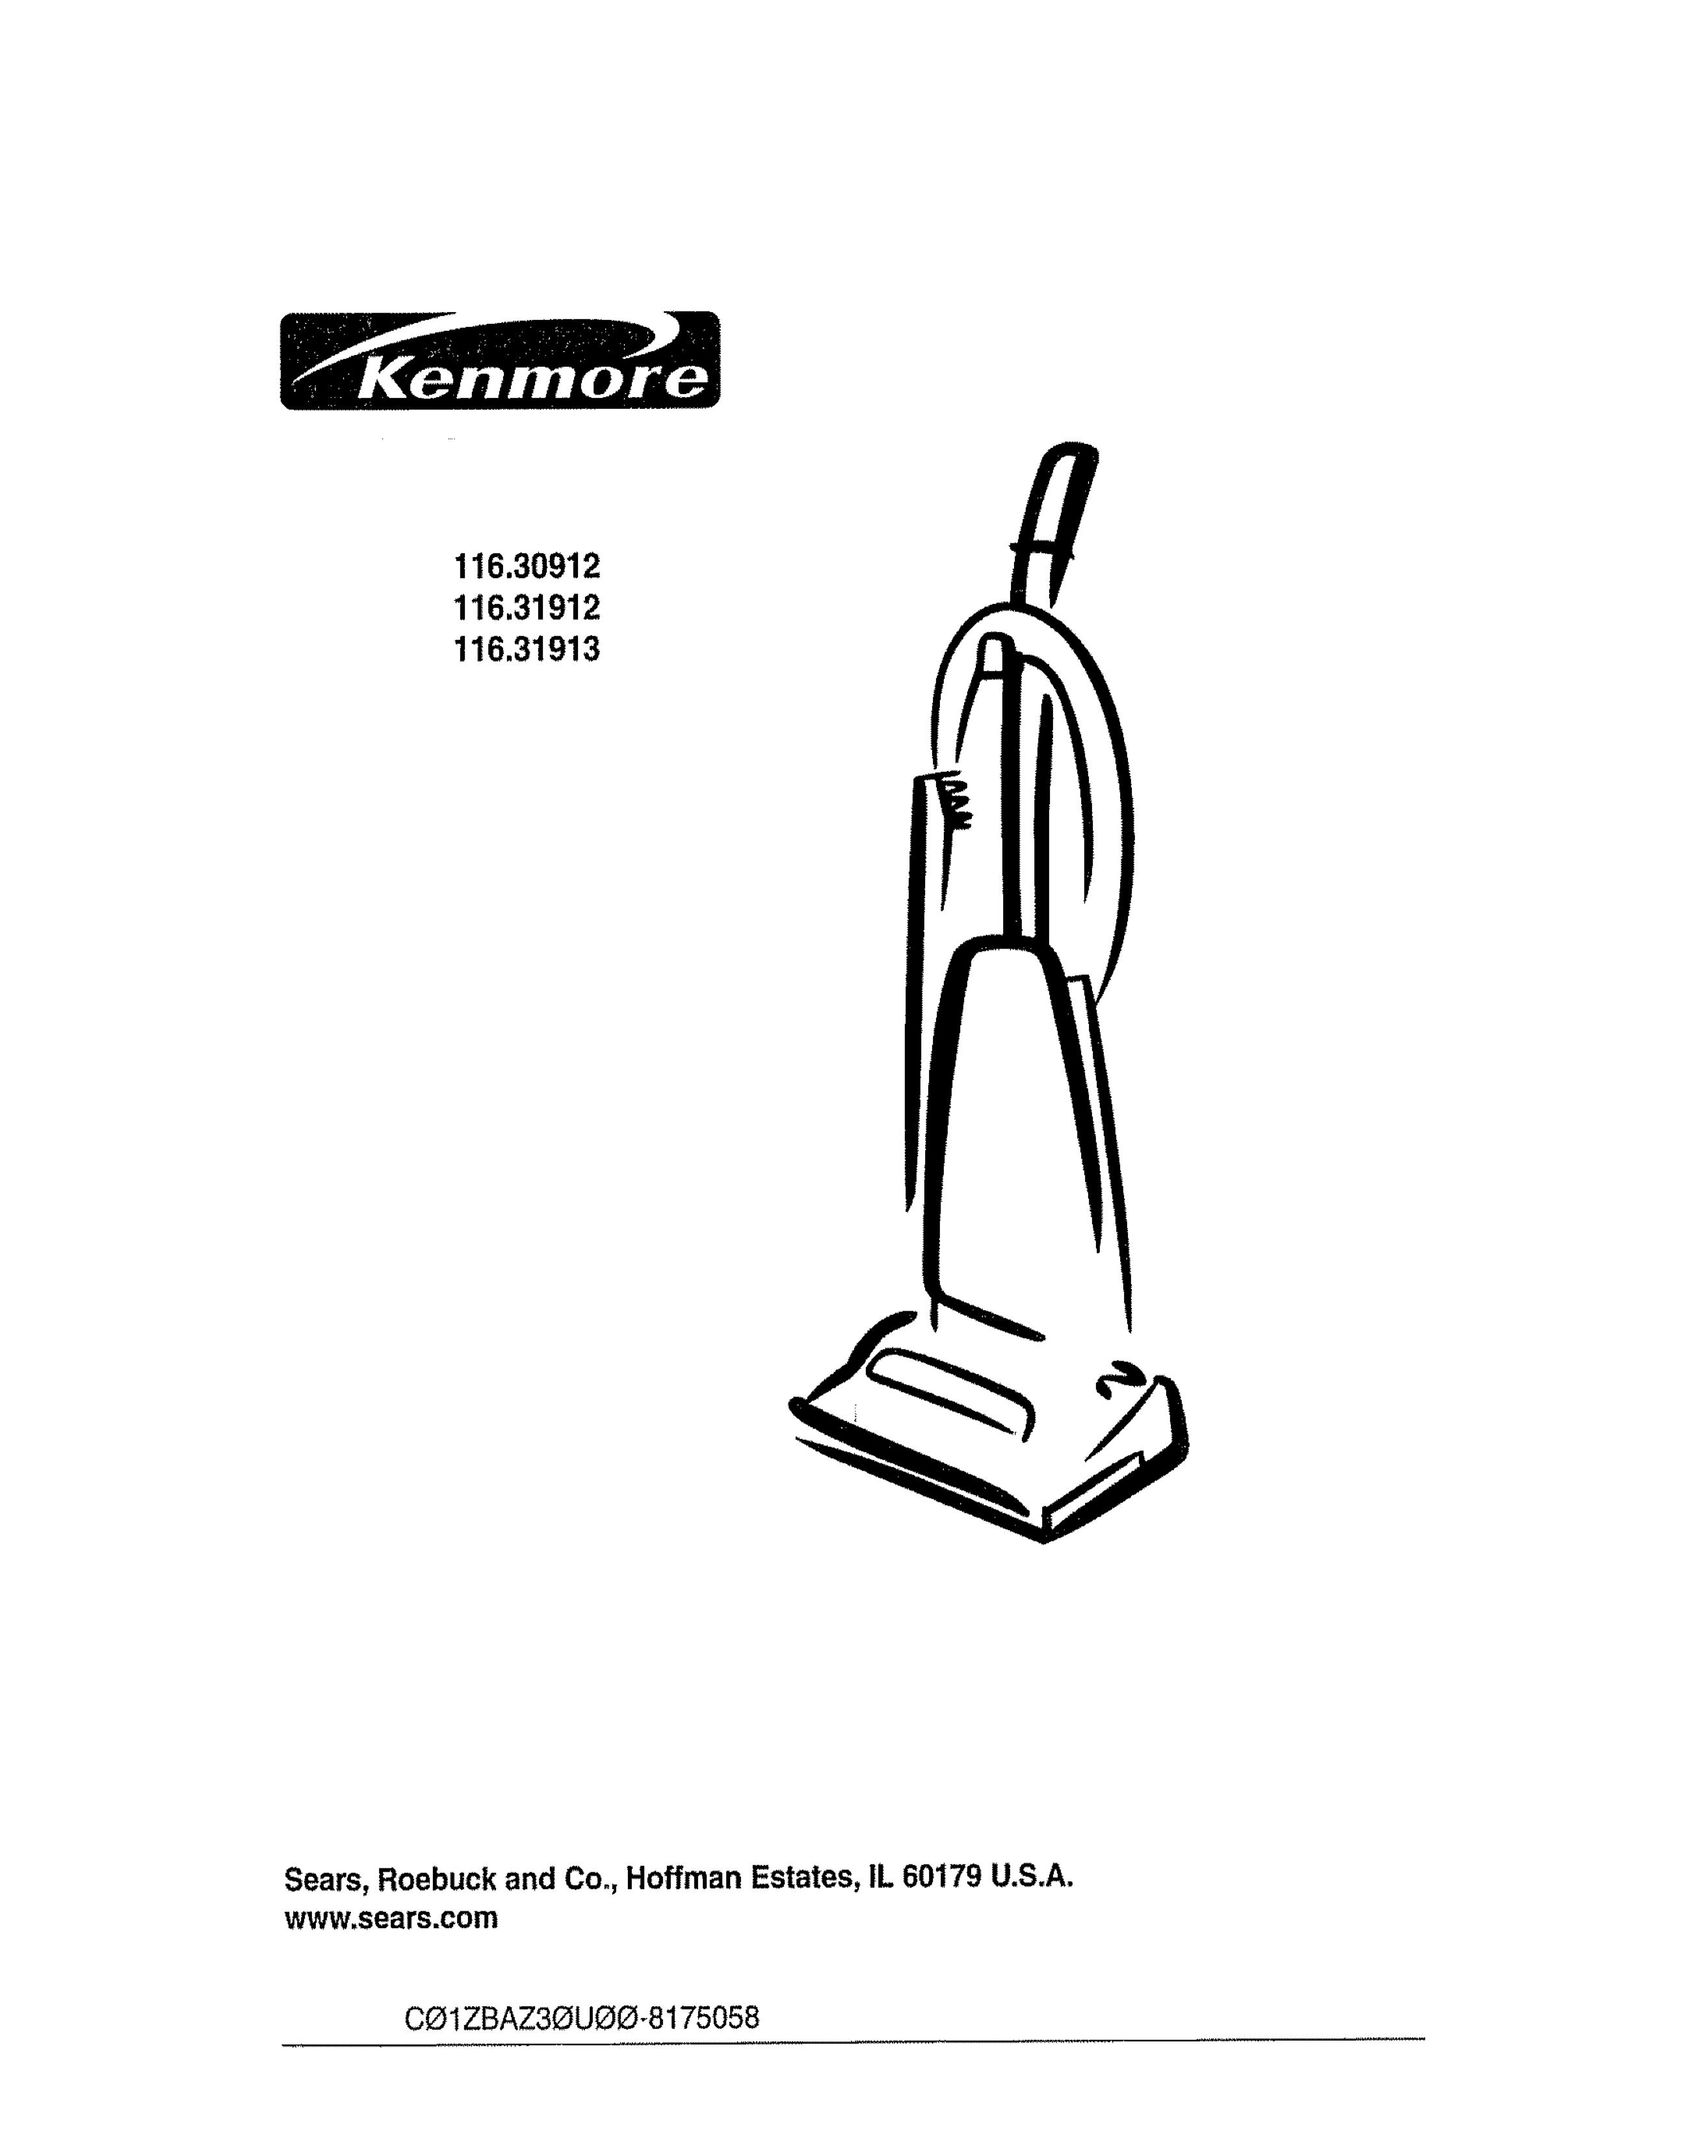 Kenmore 116.30912 Vacuum Cleaner User Manual